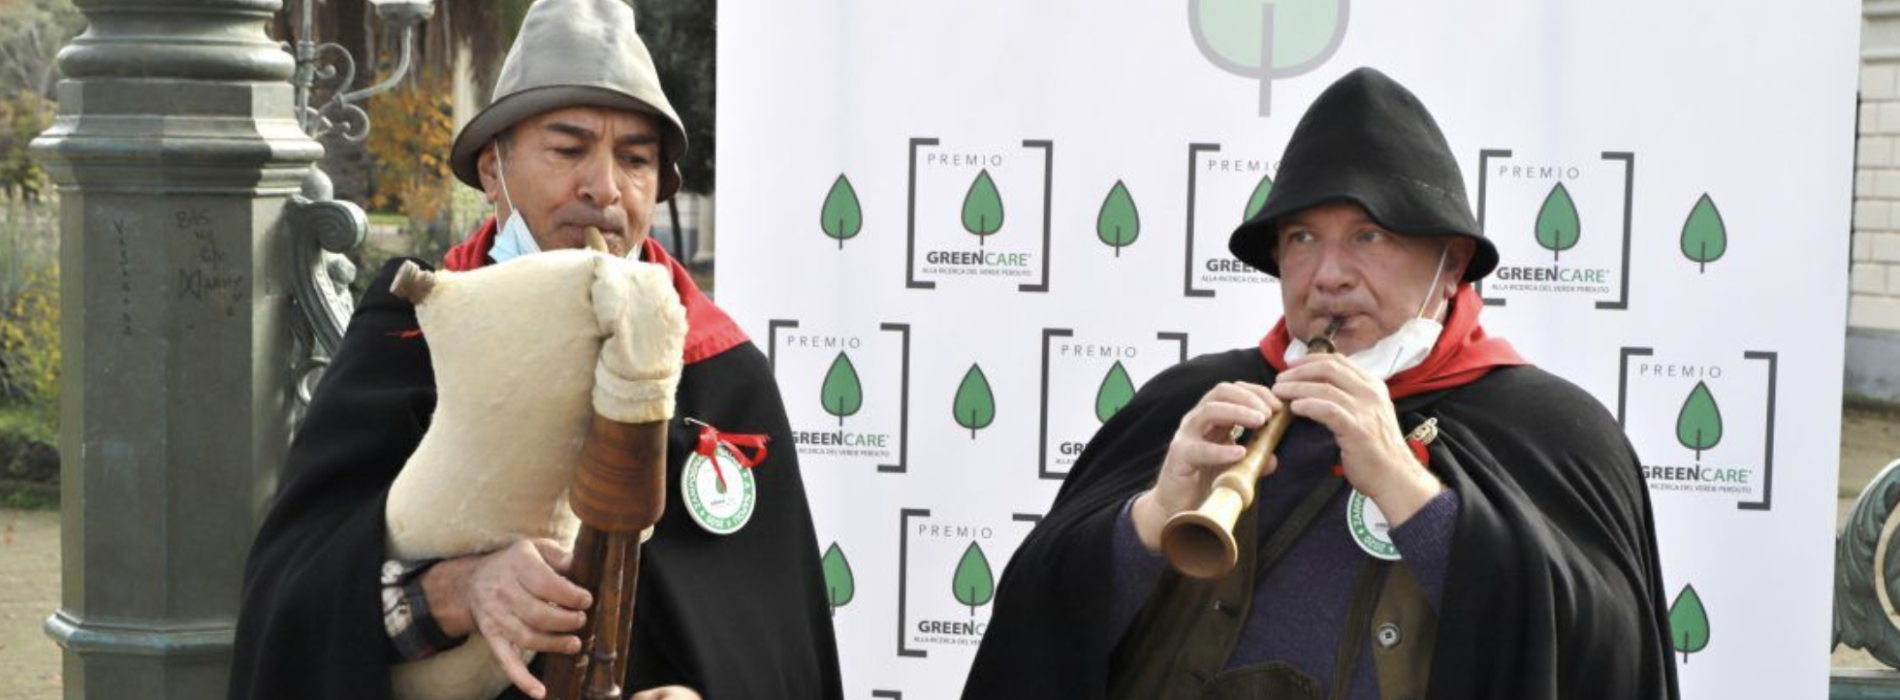 Premio GreenCare, gli zampognari in piazza Carlo di Borbone